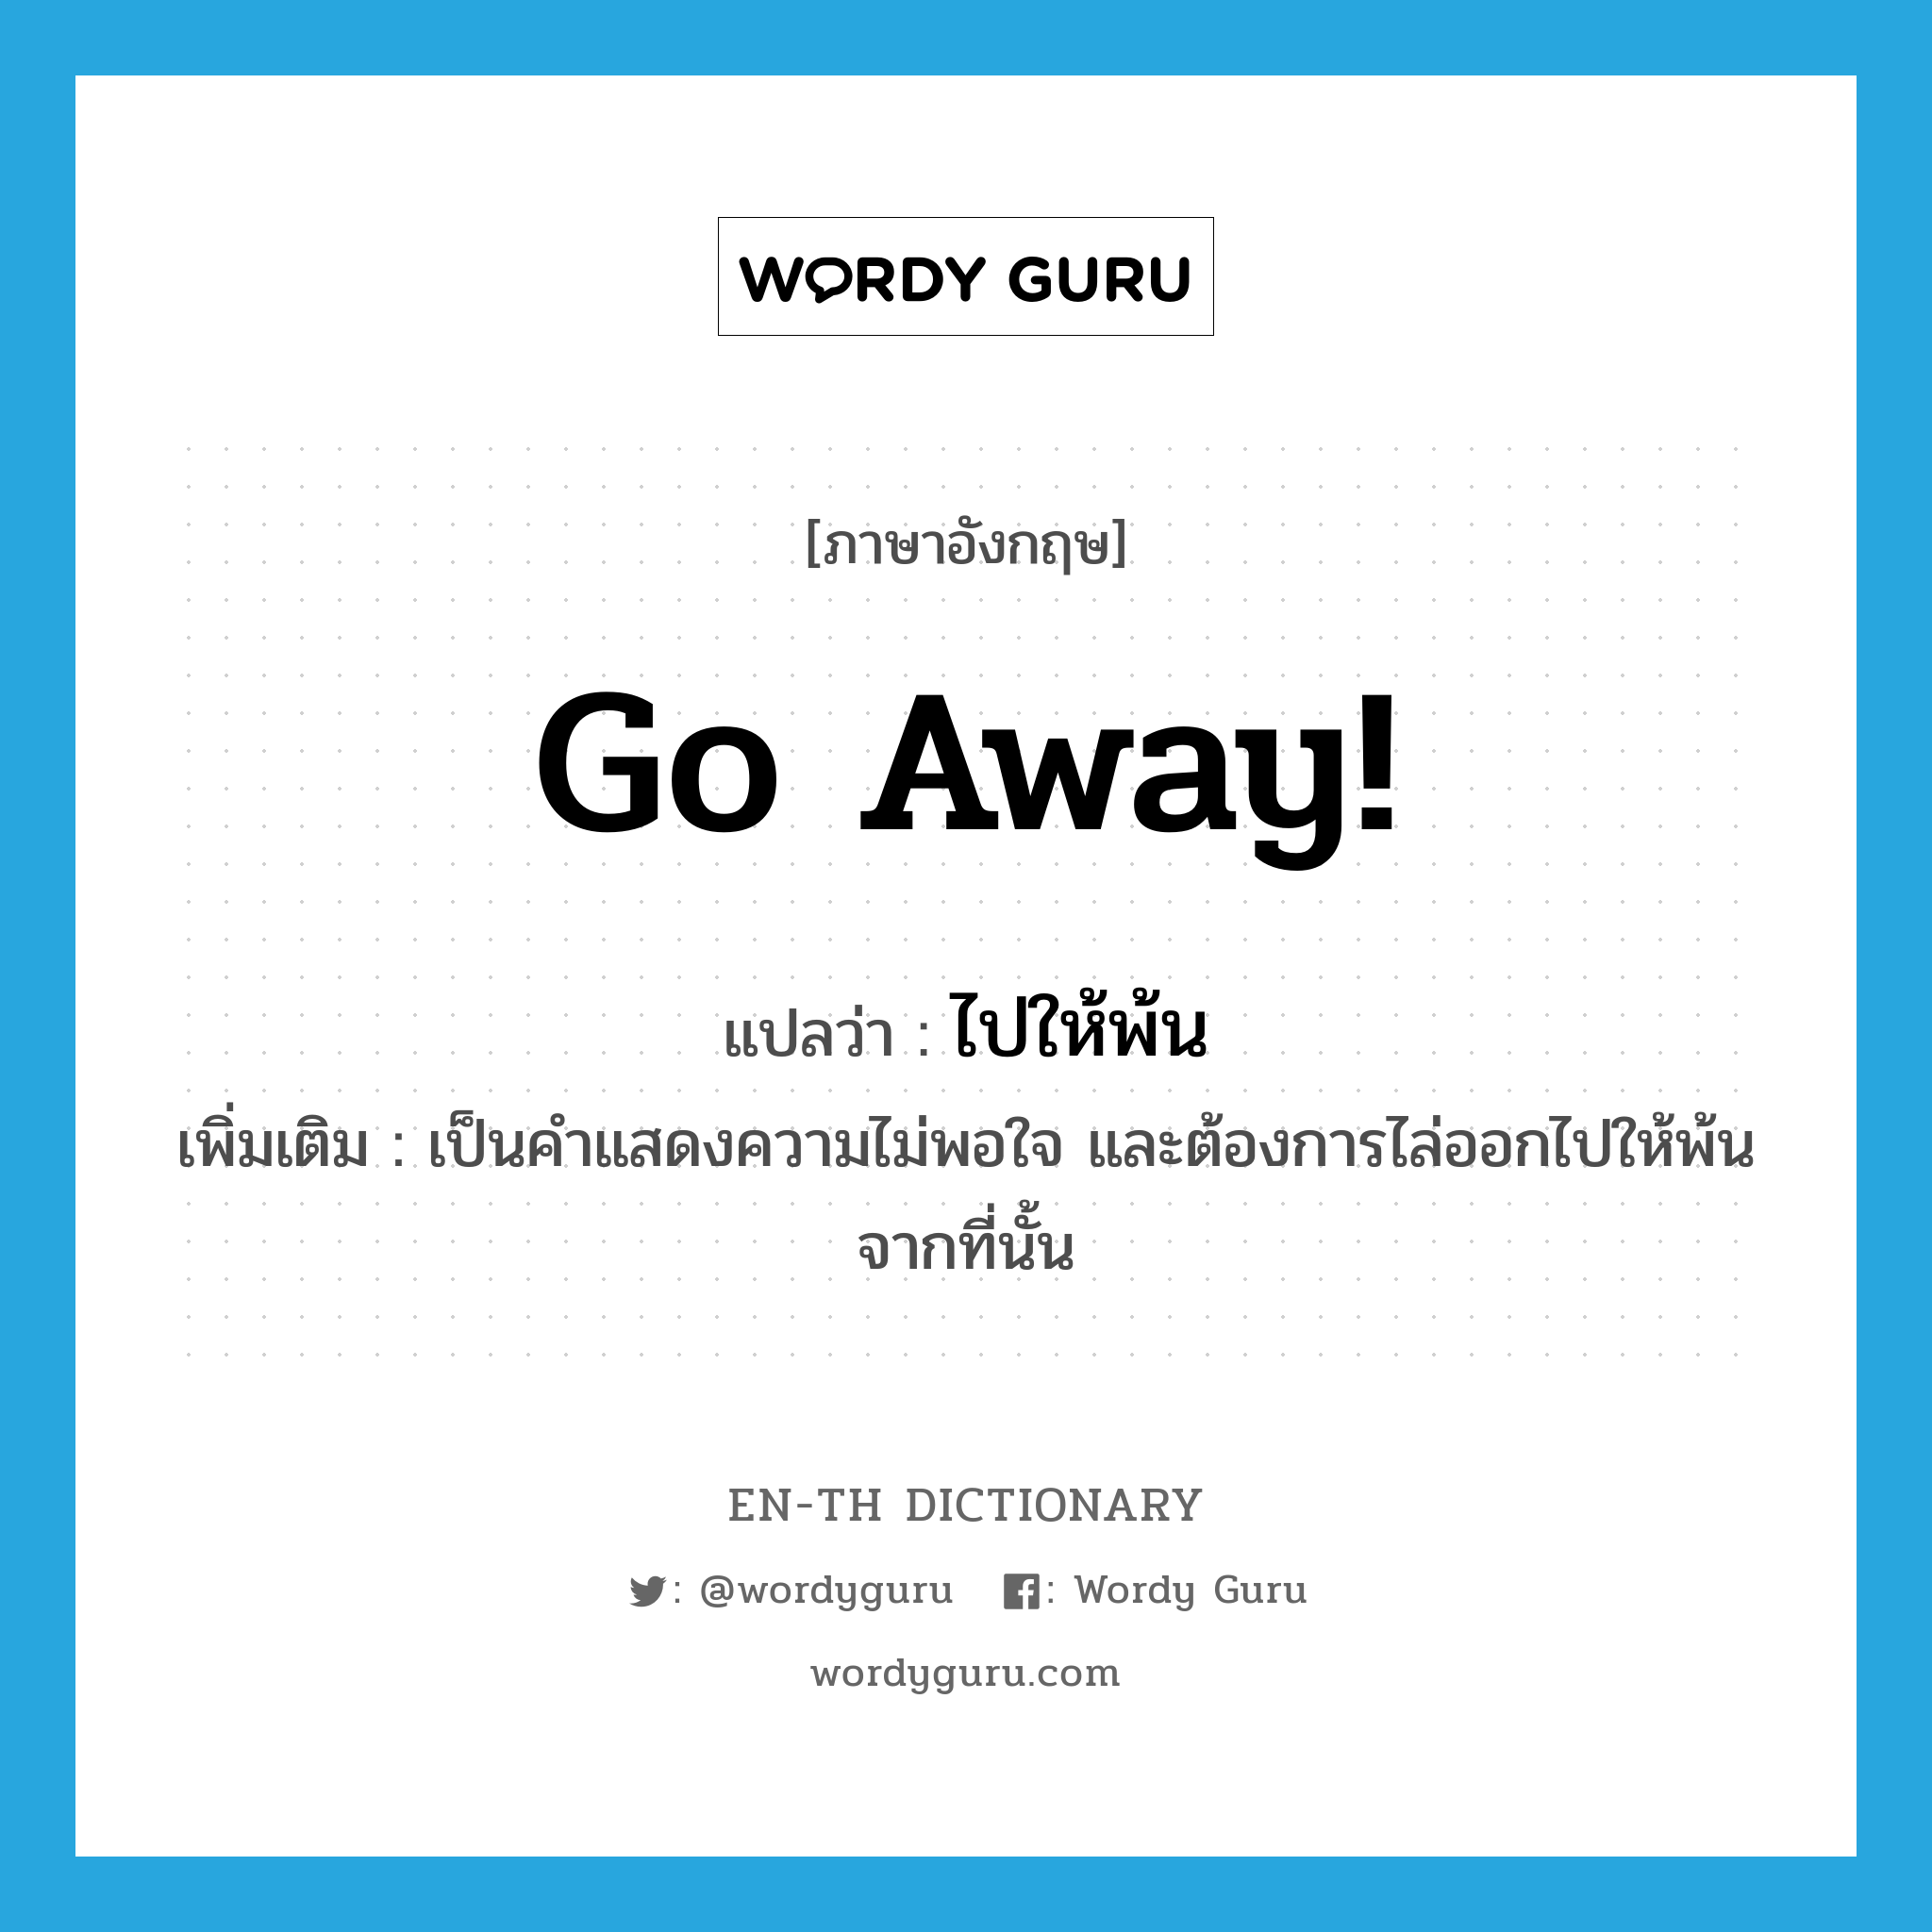 Go away! แปลว่า?, คำศัพท์ภาษาอังกฤษ Go away! แปลว่า ไปให้พ้น ประเภท V เพิ่มเติม เป็นคำแสดงความไม่พอใจ และต้องการไล่ออกไปให้พ้นจากที่นั้น หมวด V